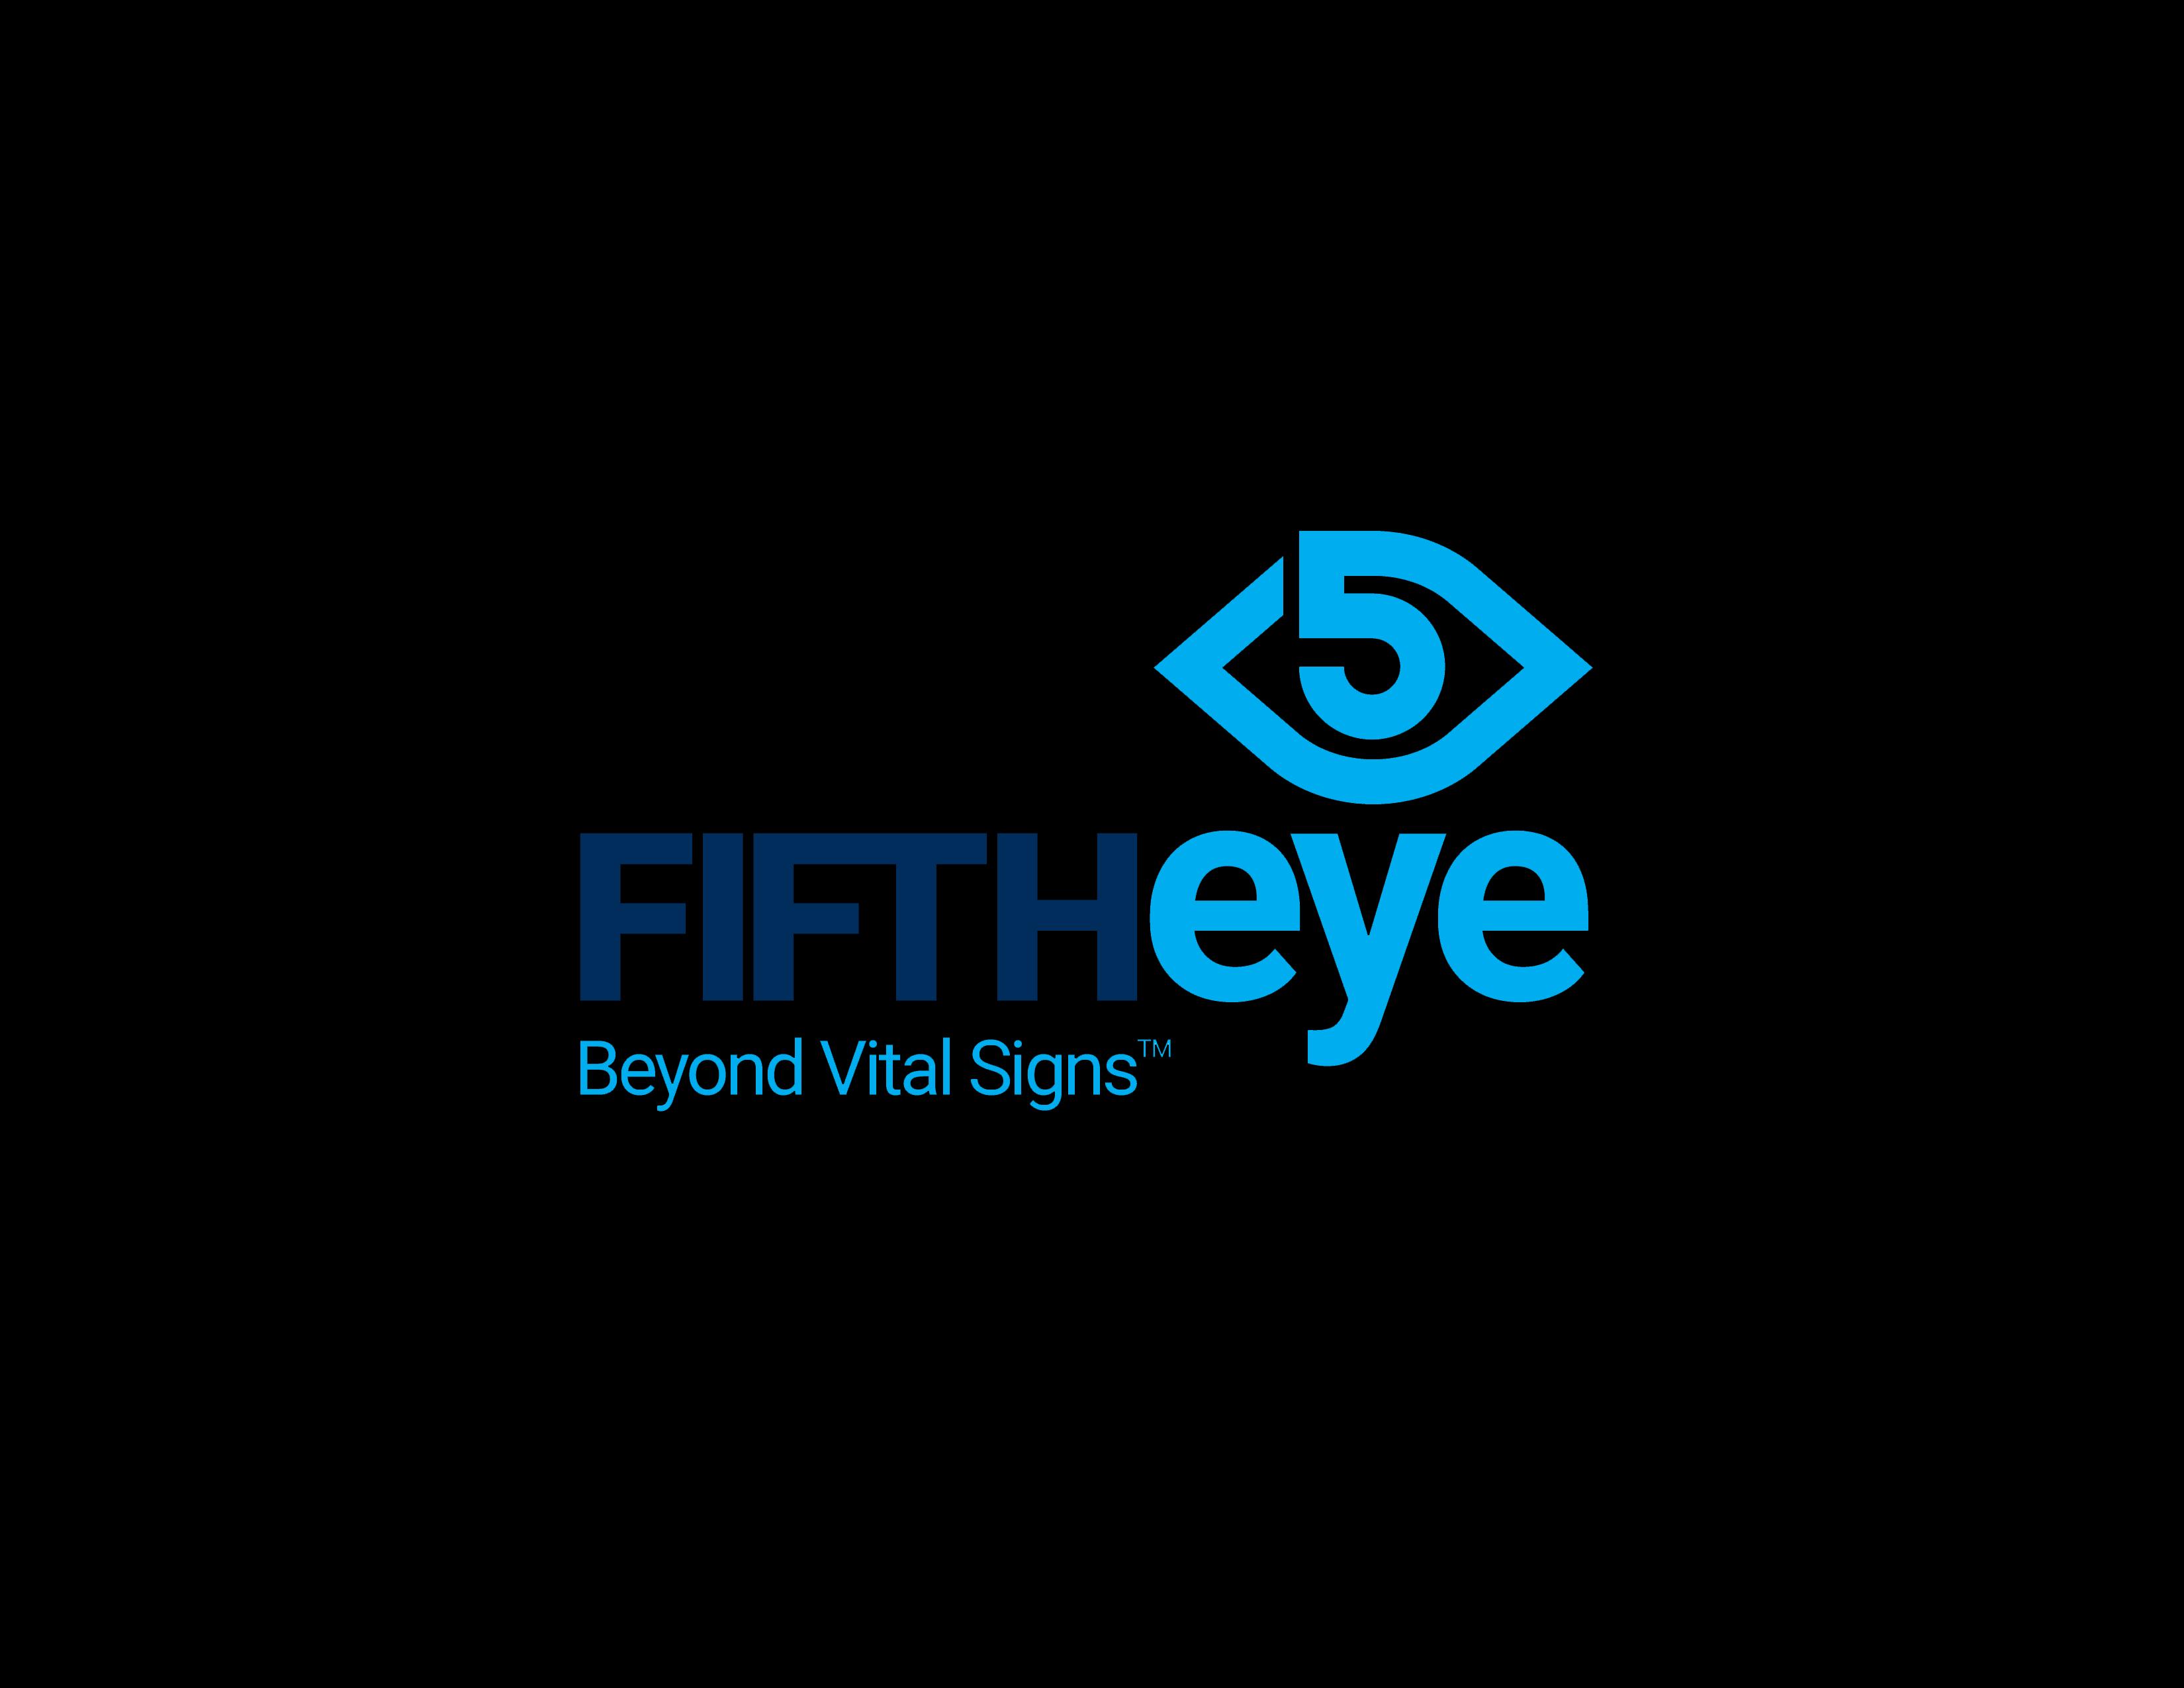 Fifth Eye_logo